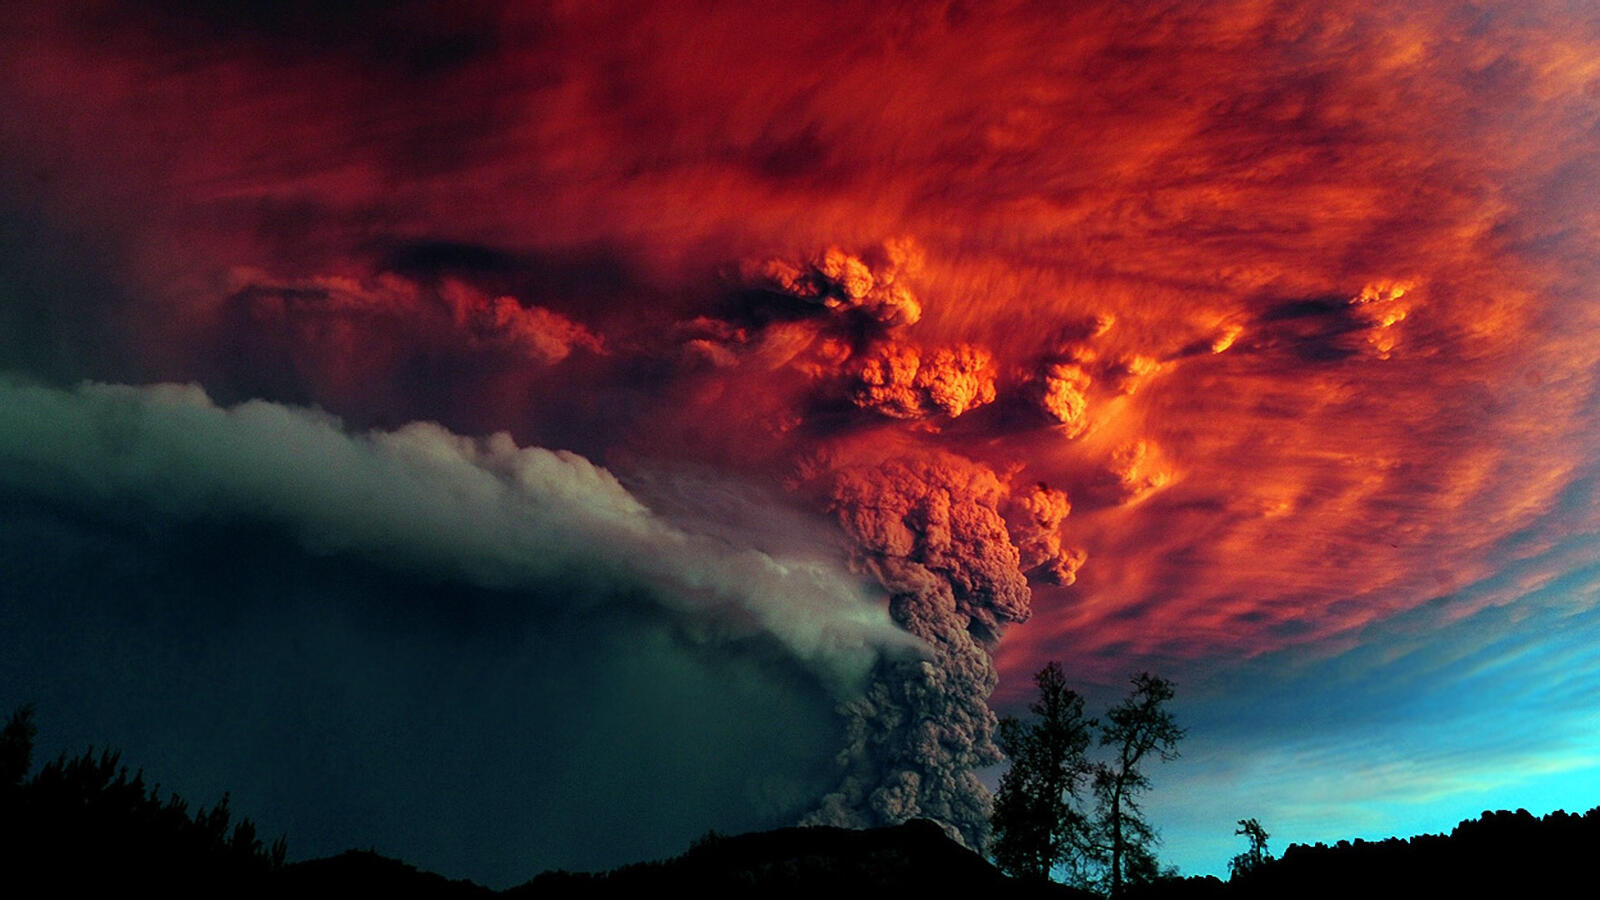 Wallpapers night eruption volcano on the desktop